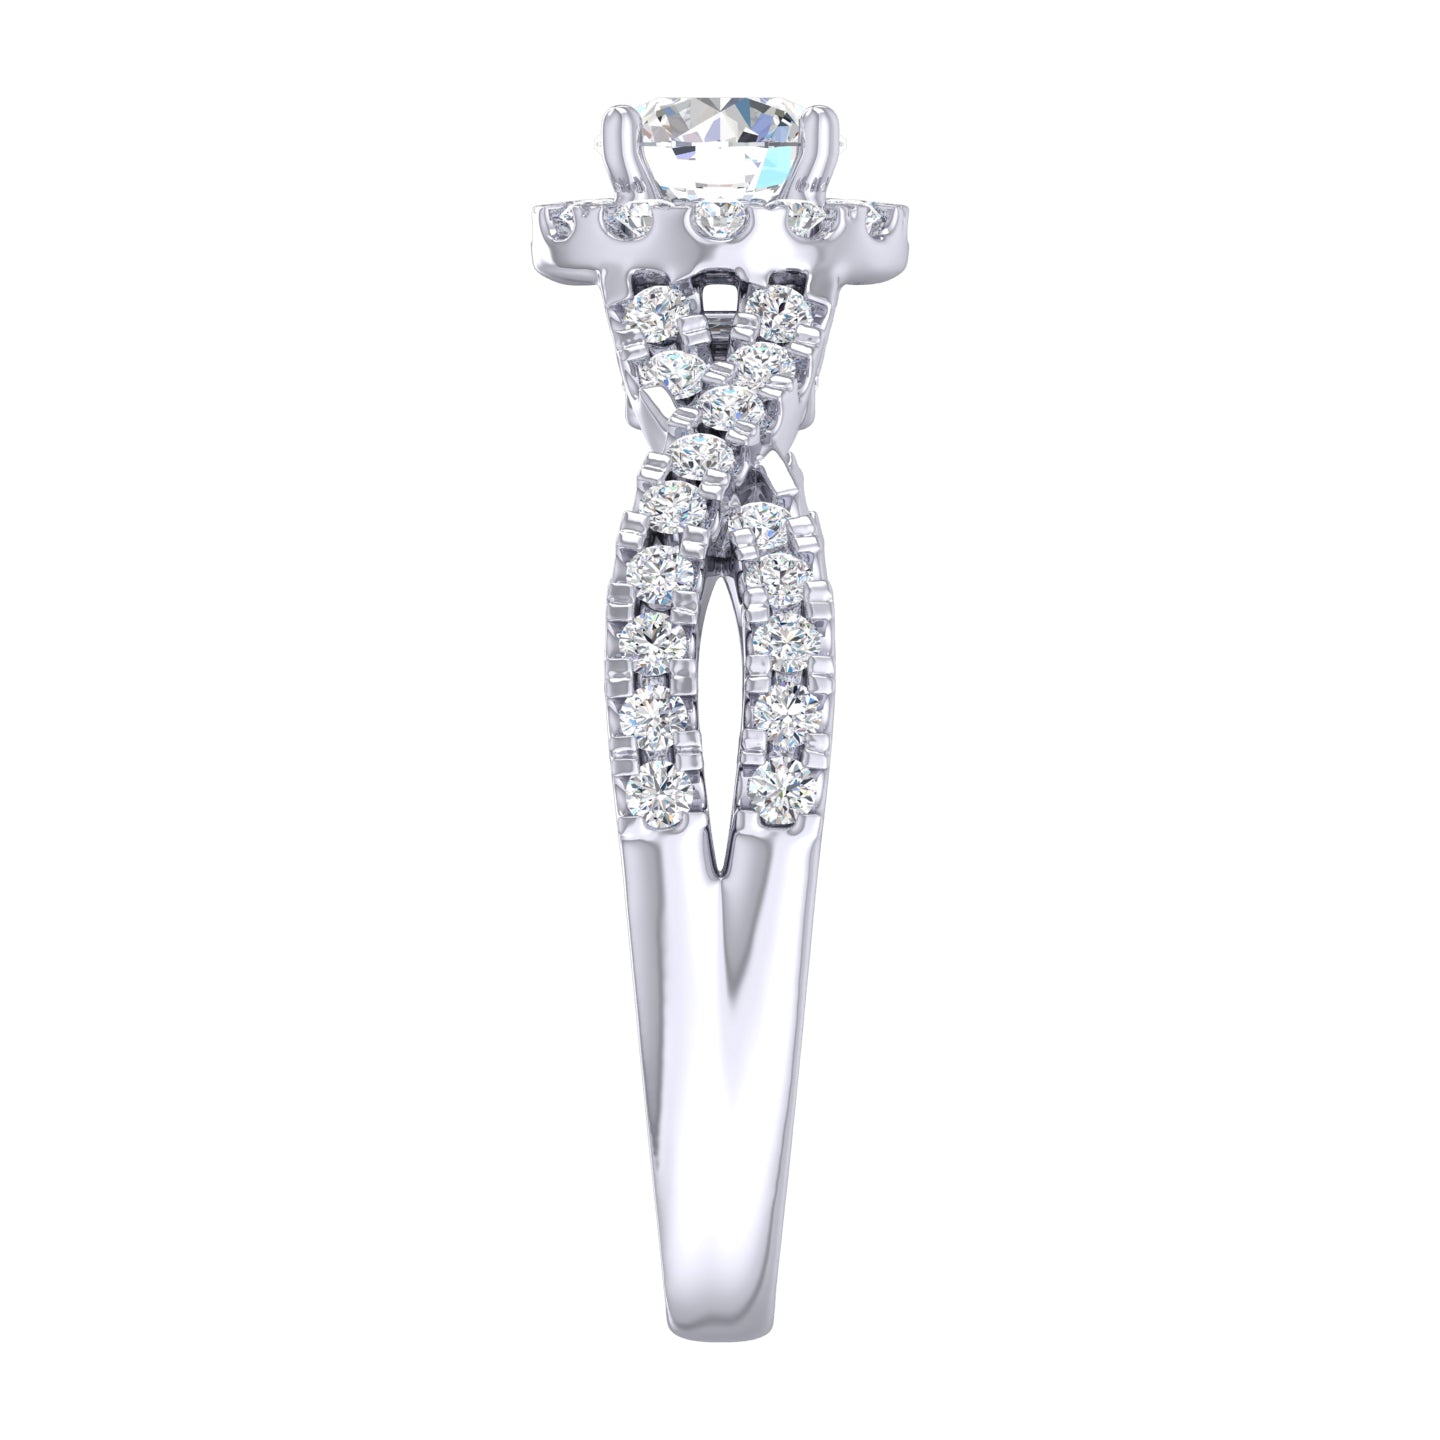 Twist Milgrain Accent Round Brilliant Cut Diamond Engagement Ring